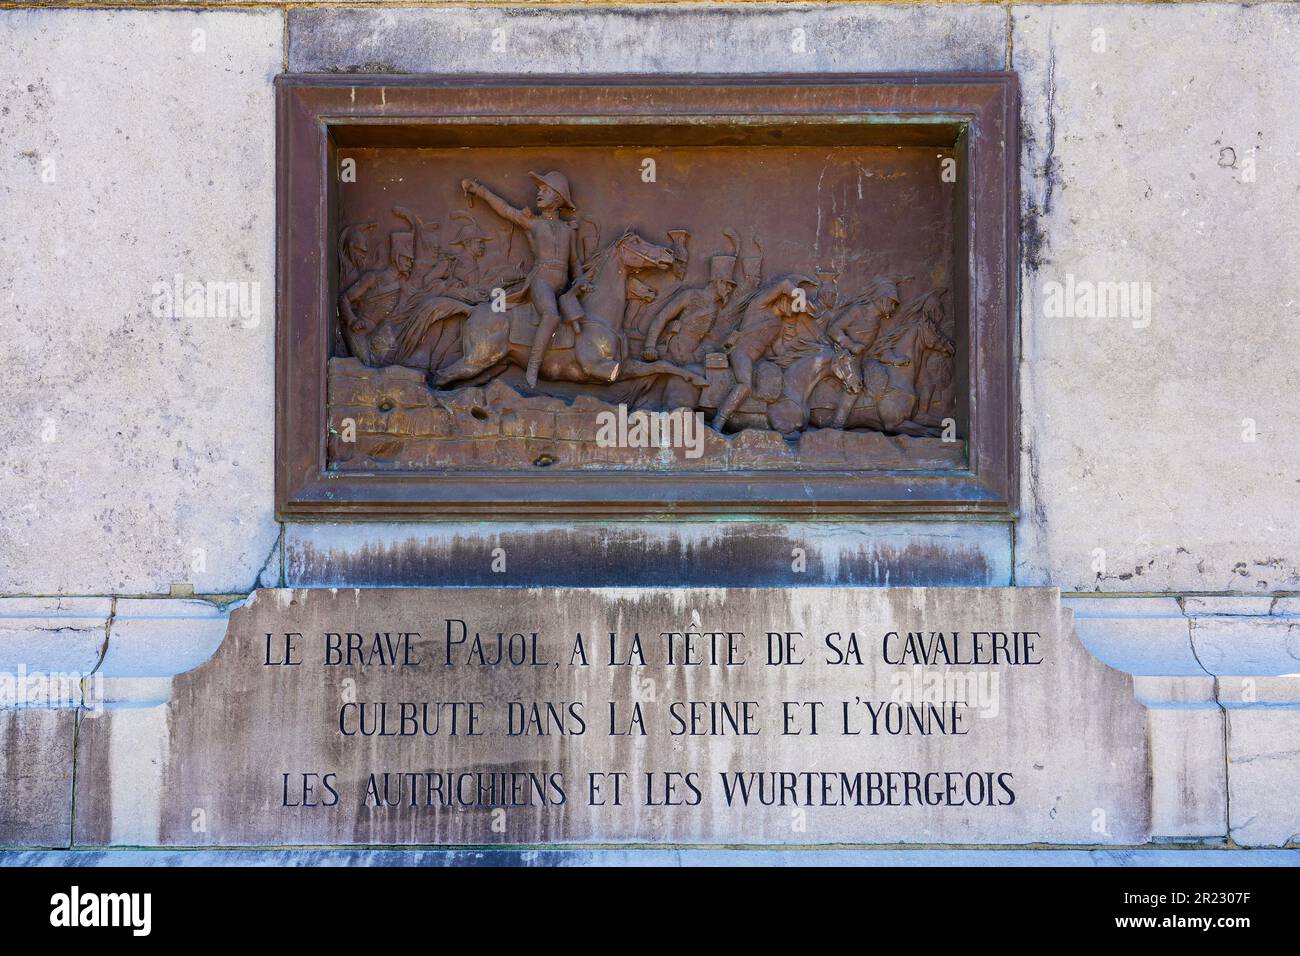 Bronzetafel auf dem Sockel der Reiterstatue Napoleons auf dem Legion of Honor Square in der Stadt Montereau Fault Yonne in seine et Marn Stockfoto